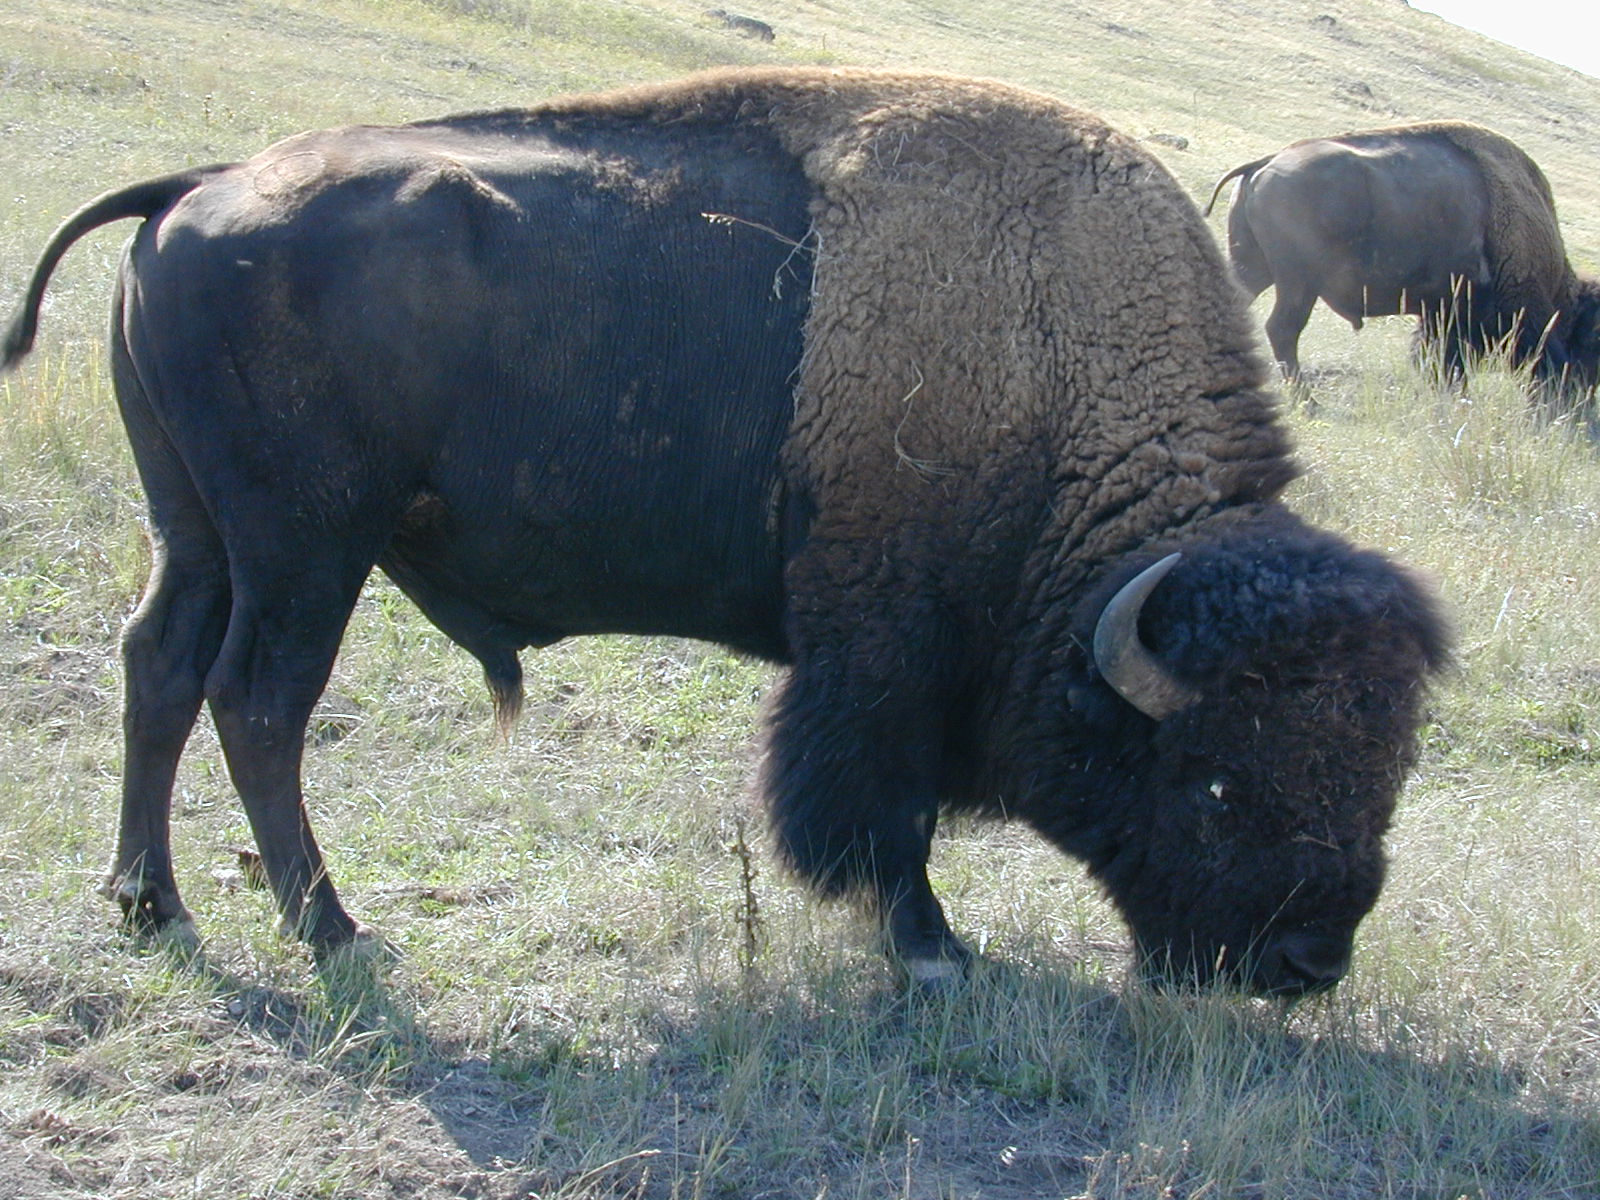 bison grazing